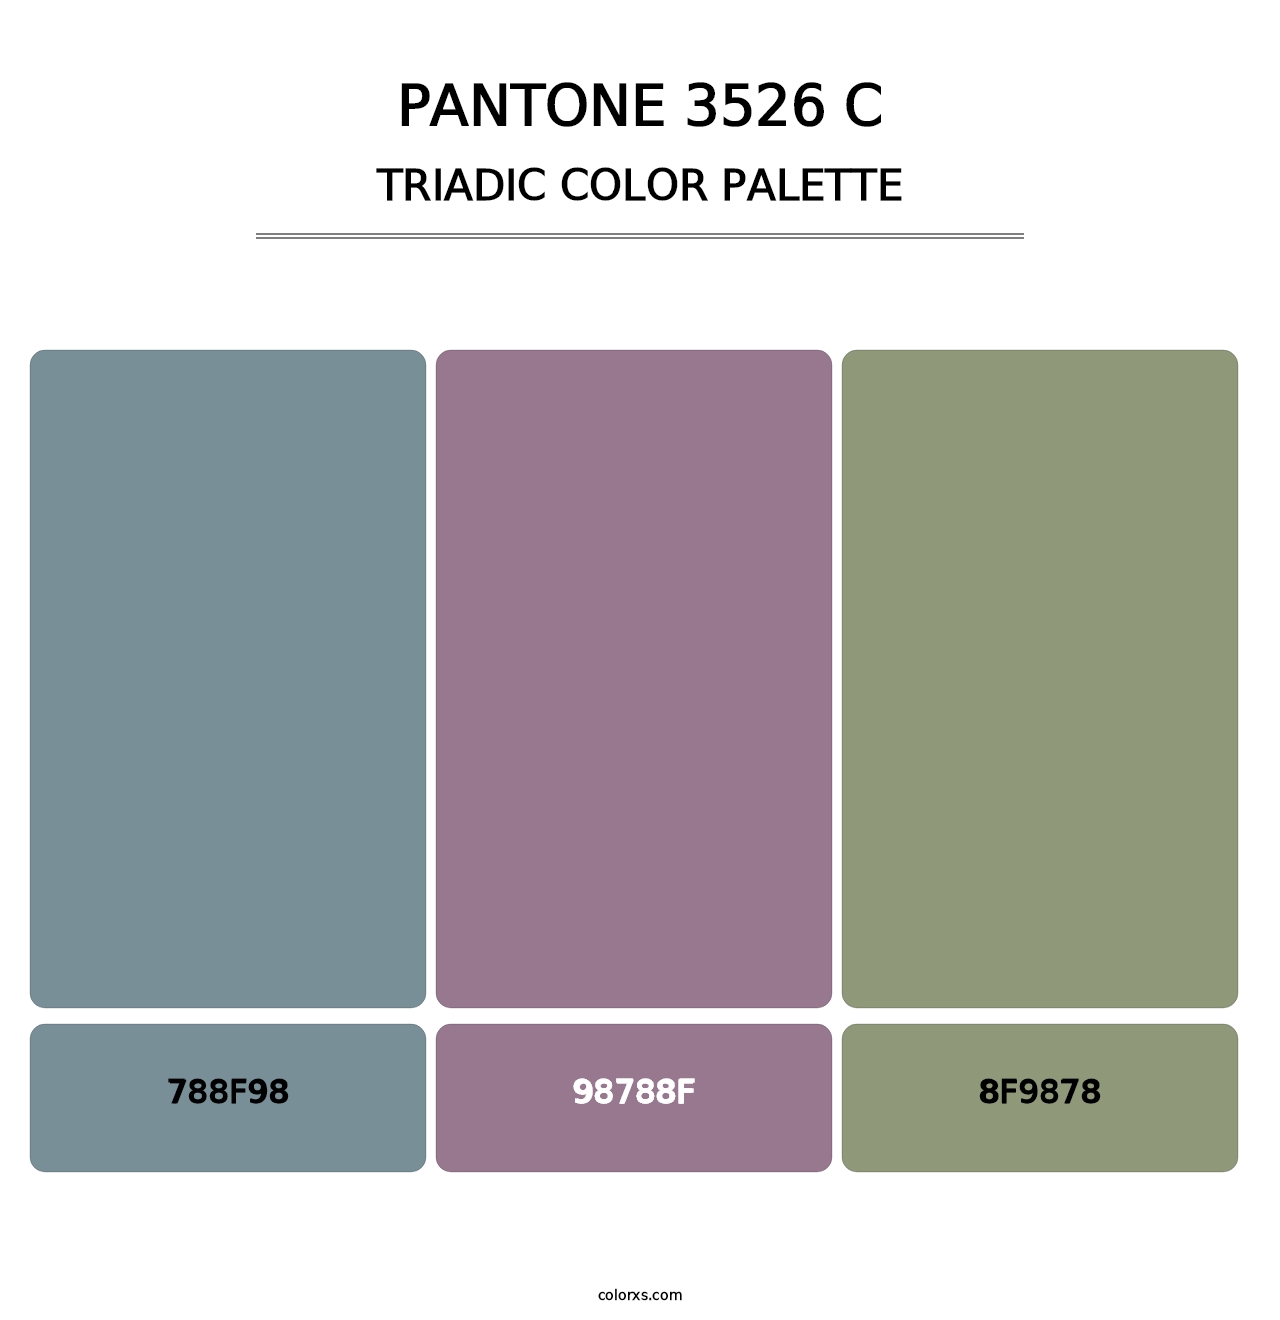 PANTONE 3526 C - Triadic Color Palette